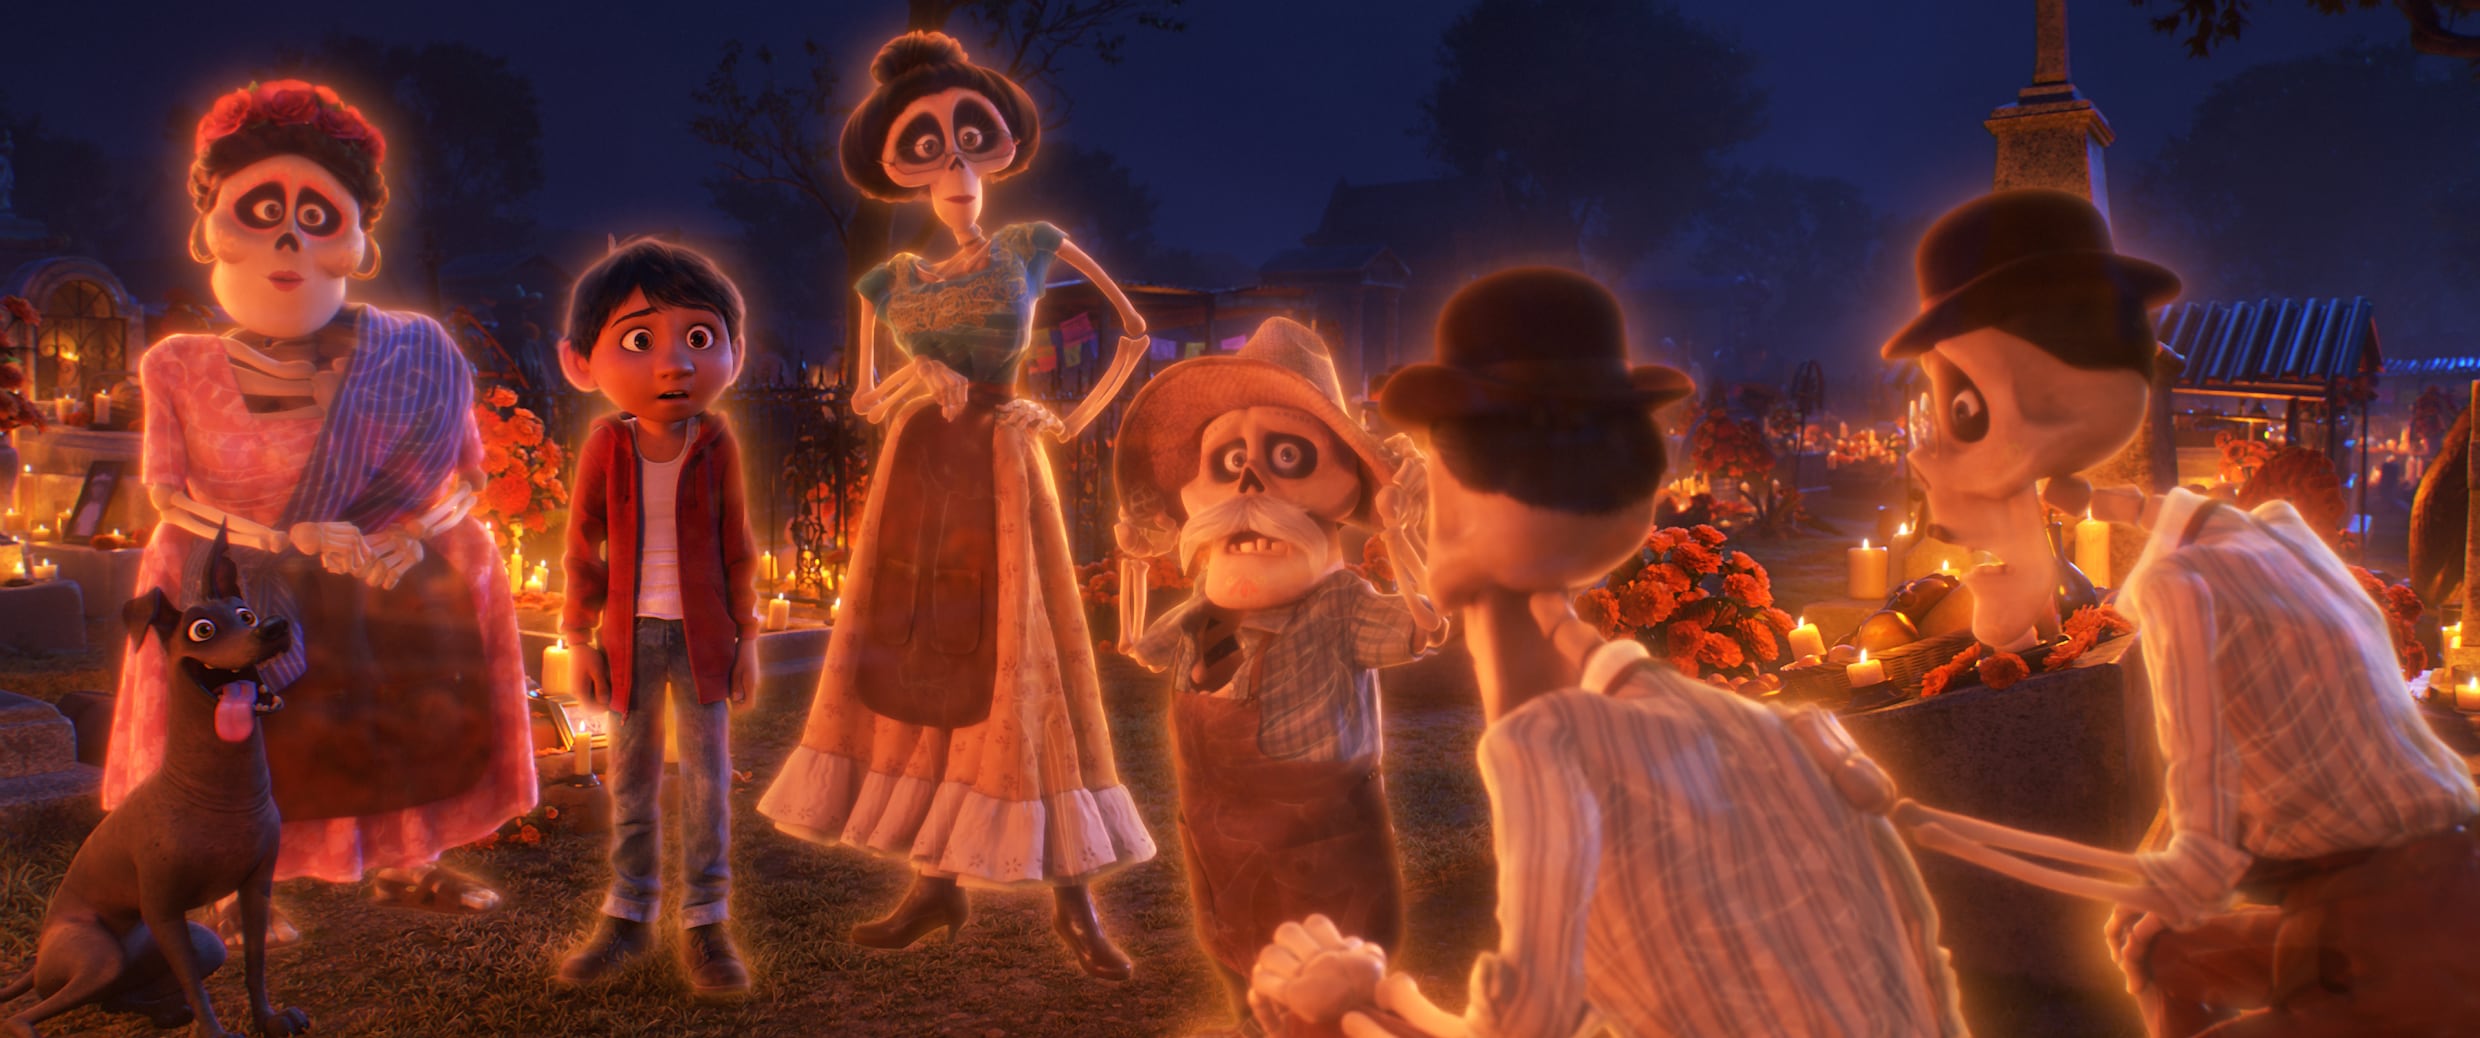 Pixar's 'Coco': Prachtige film, maar moeilijk te verkopen